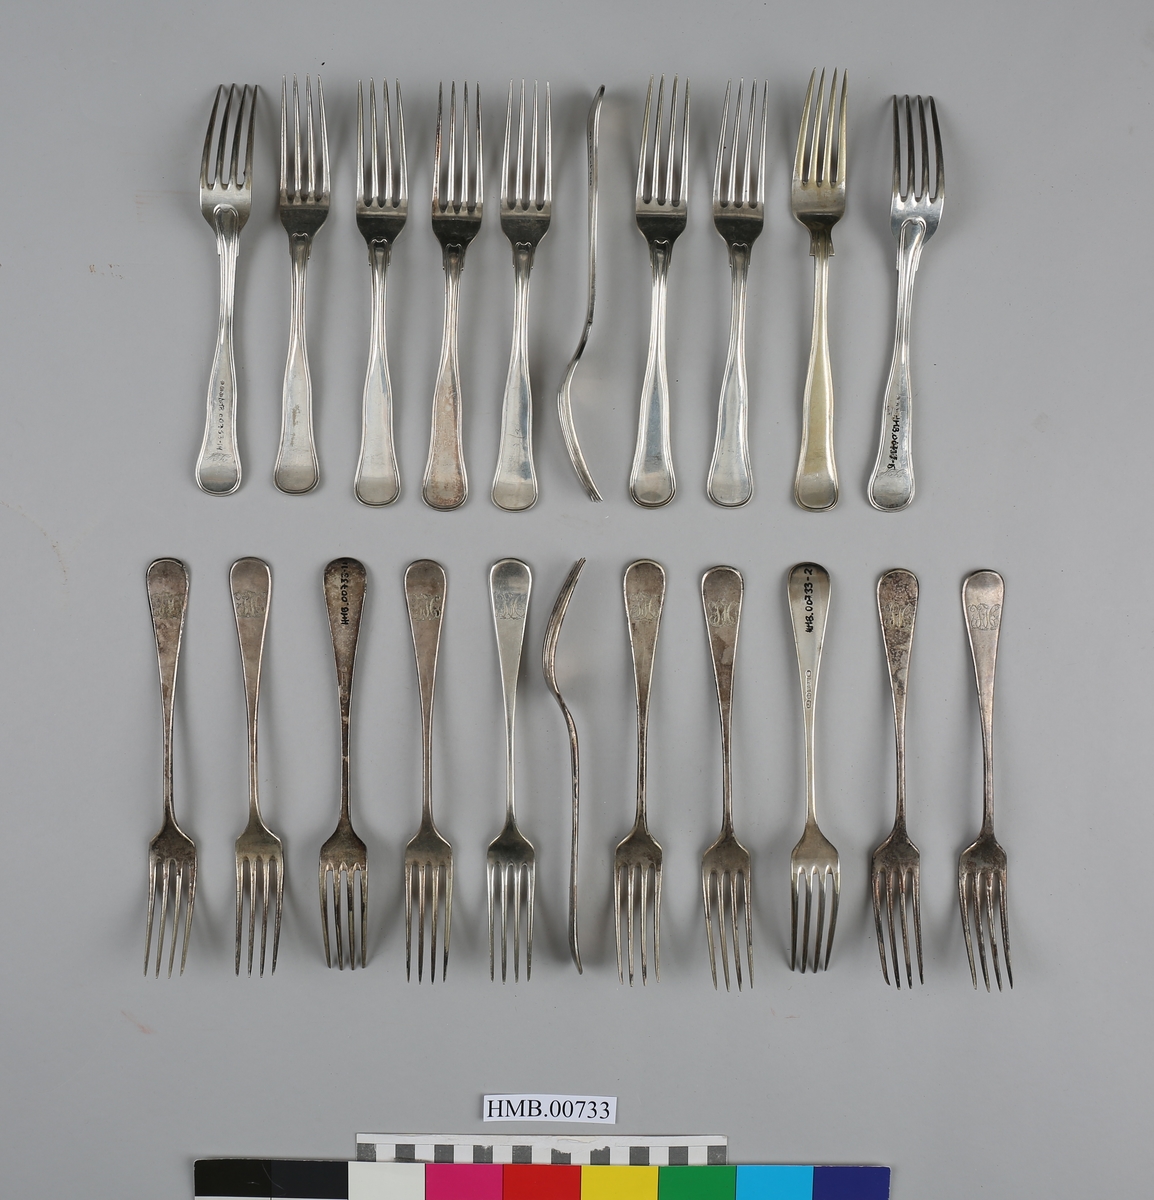 21 gafler i sølvplett, hvorav 20 med Harmens-familiens monogram.